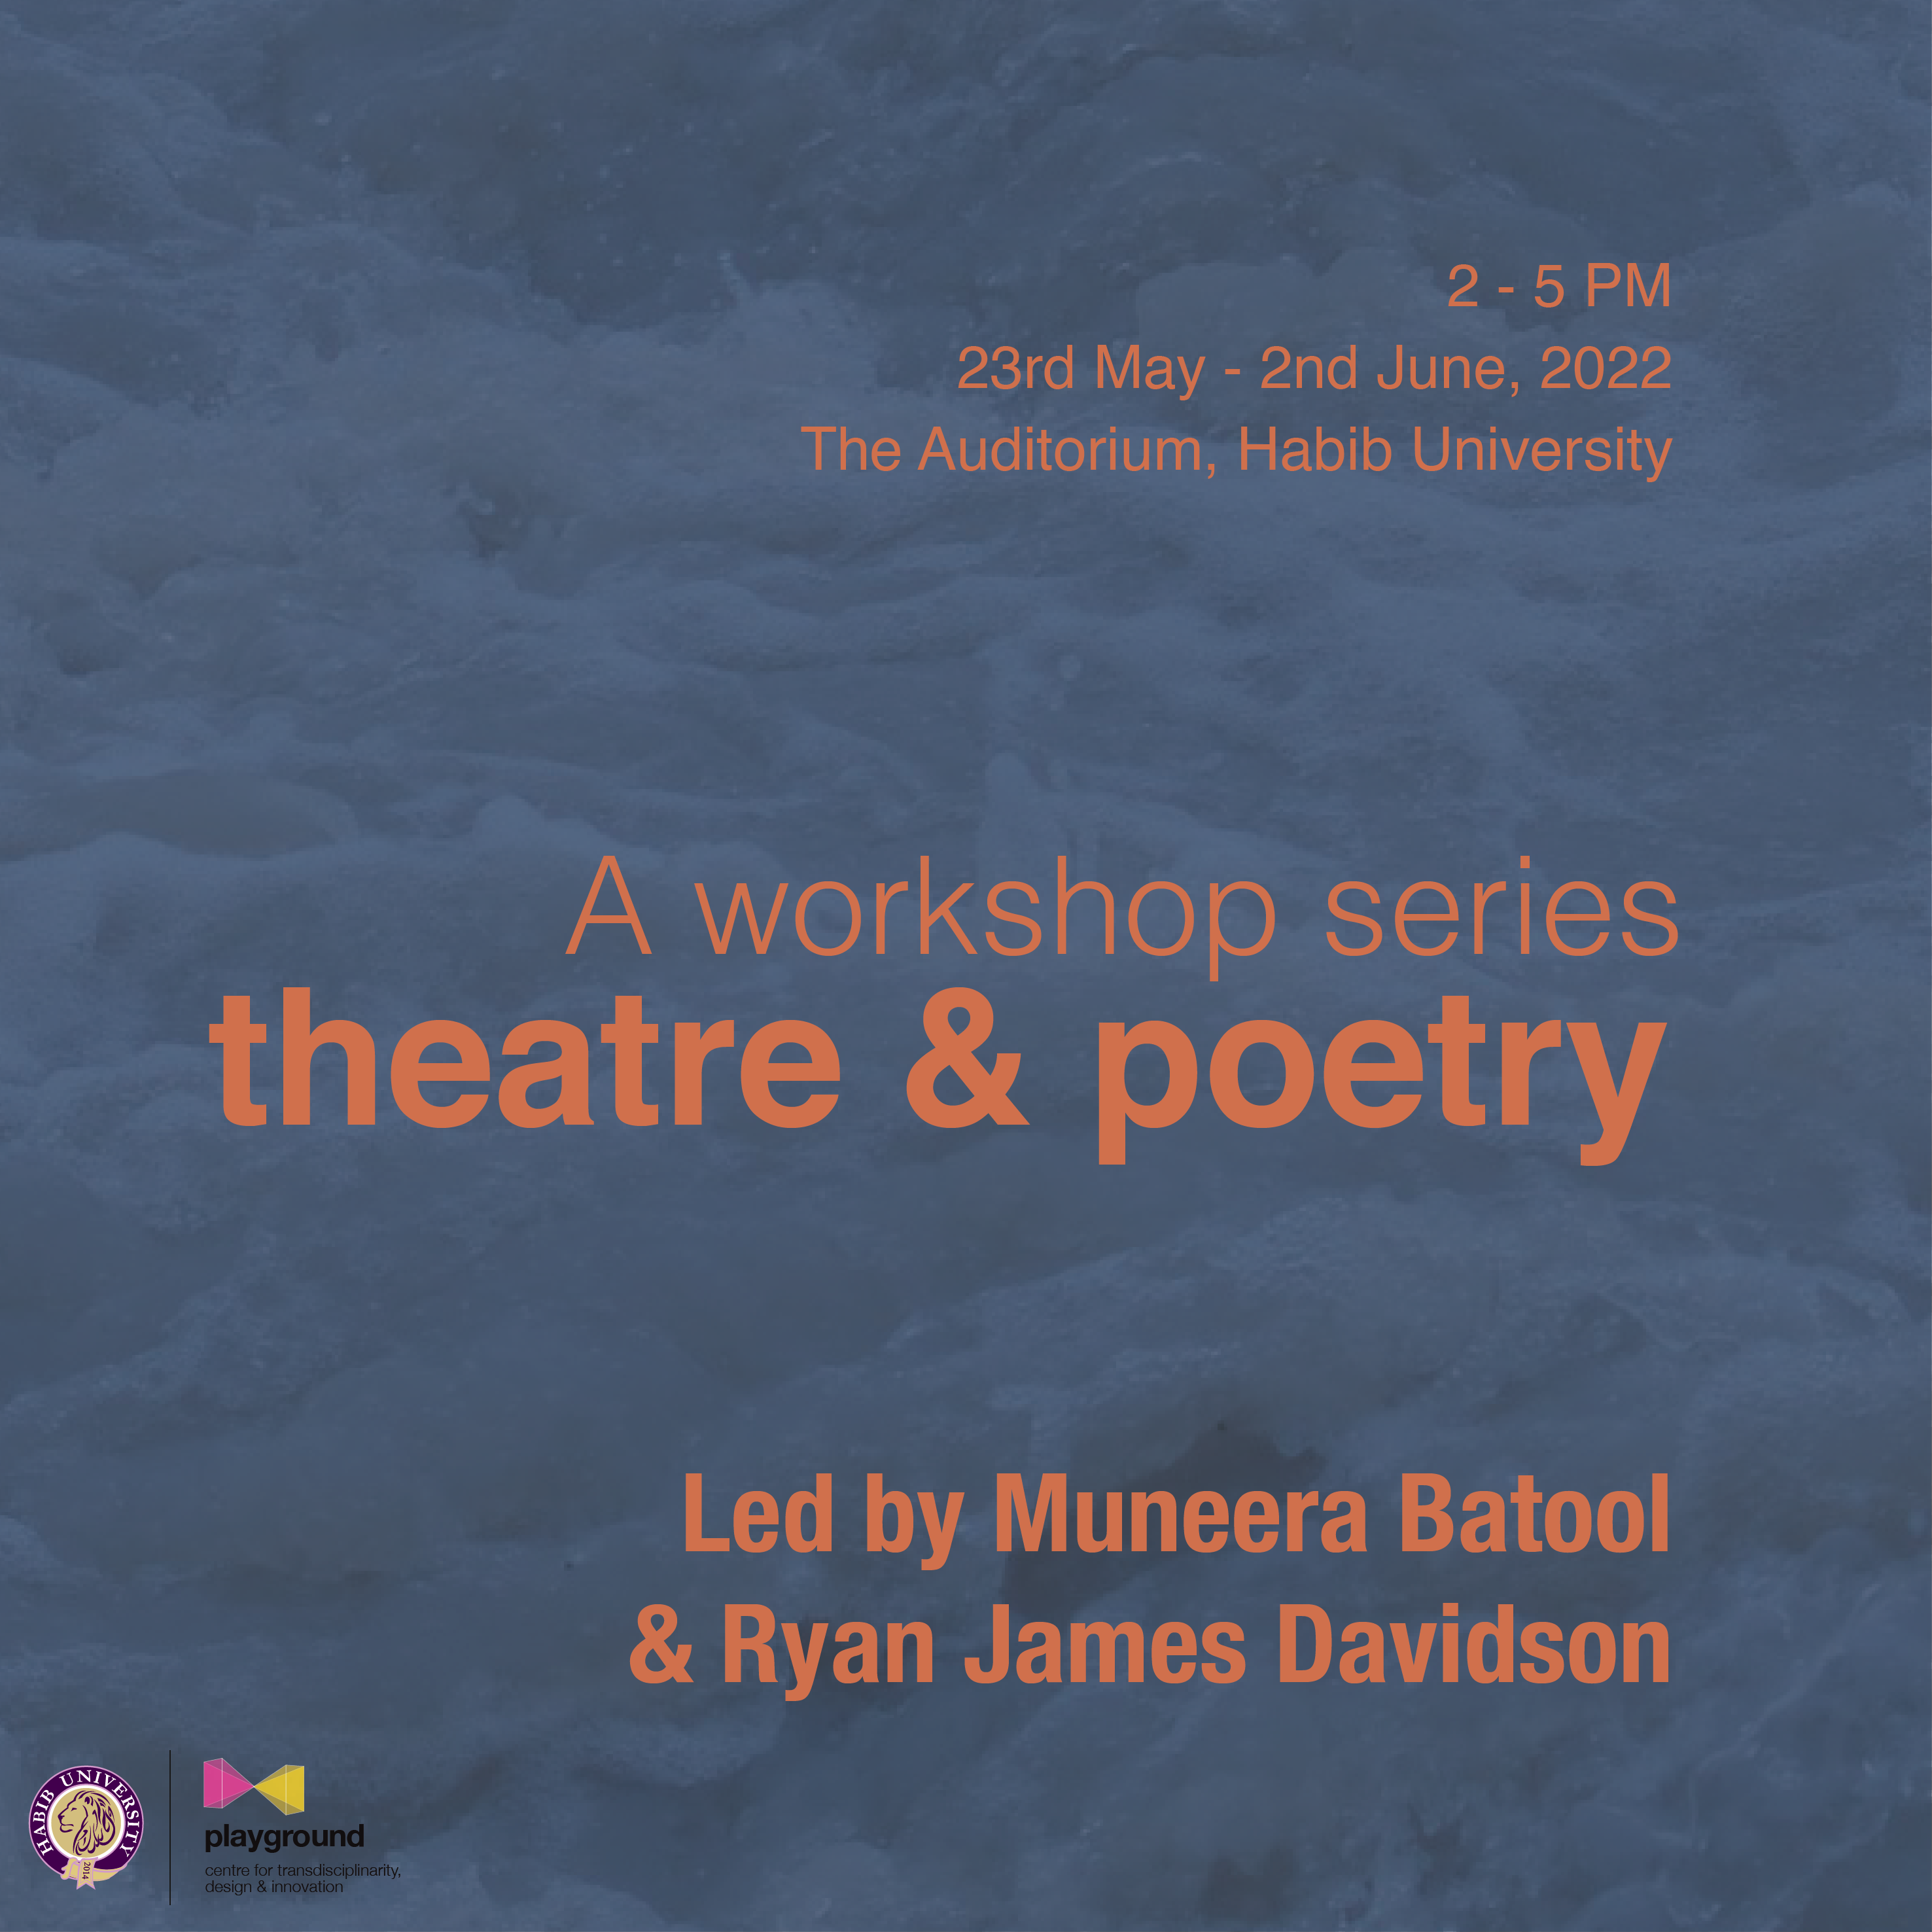 Theatre & Poetry Workshop Series